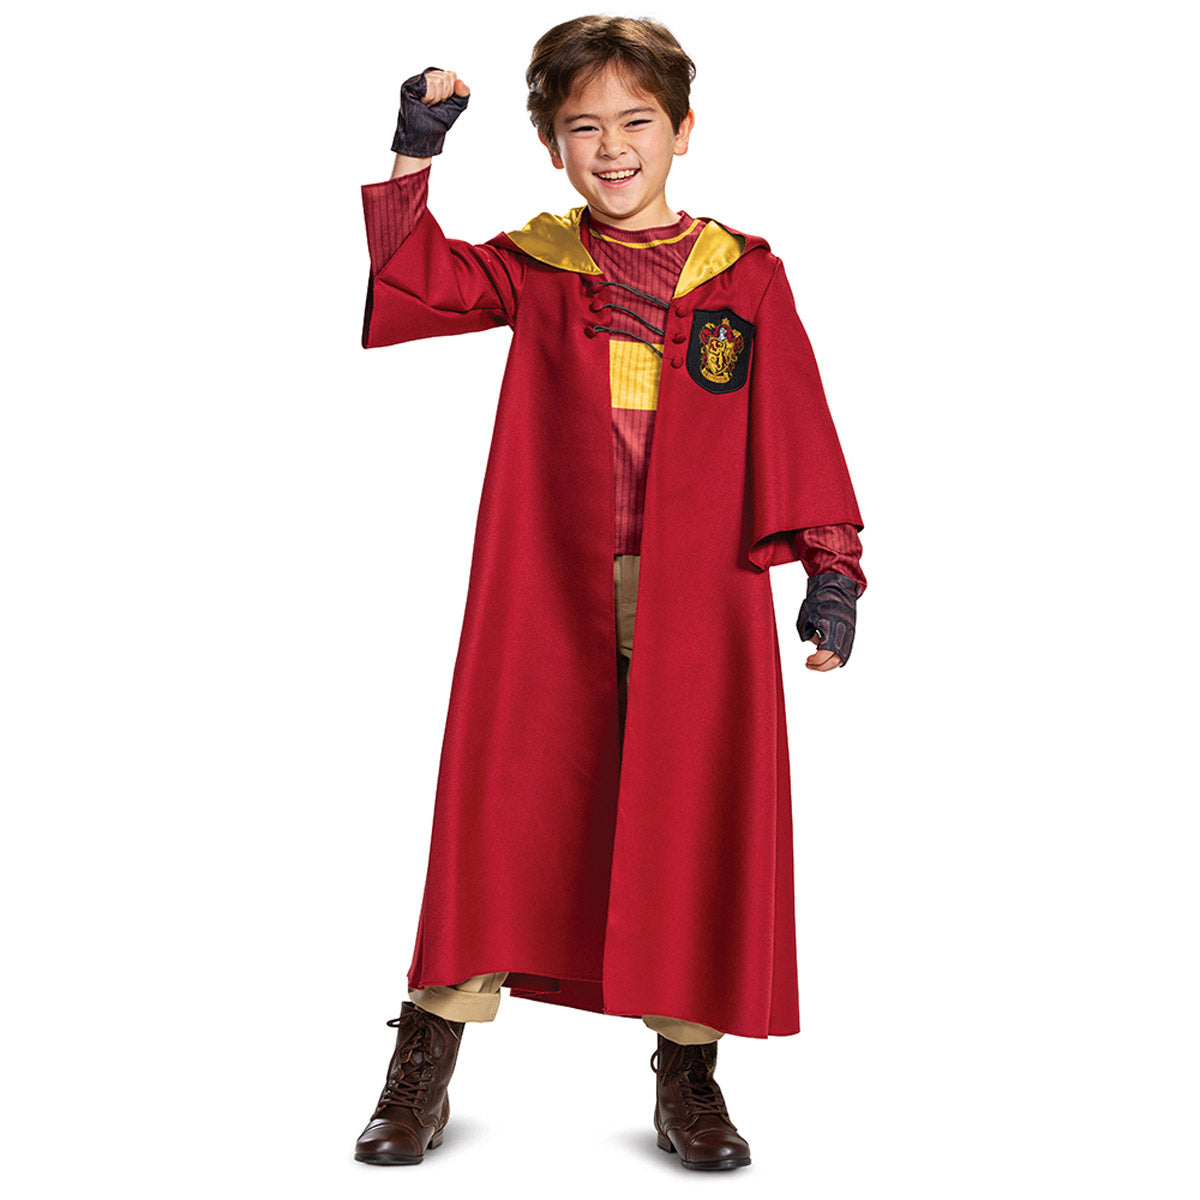 Quidditch Gryffindor Deluxe Disguise 108019